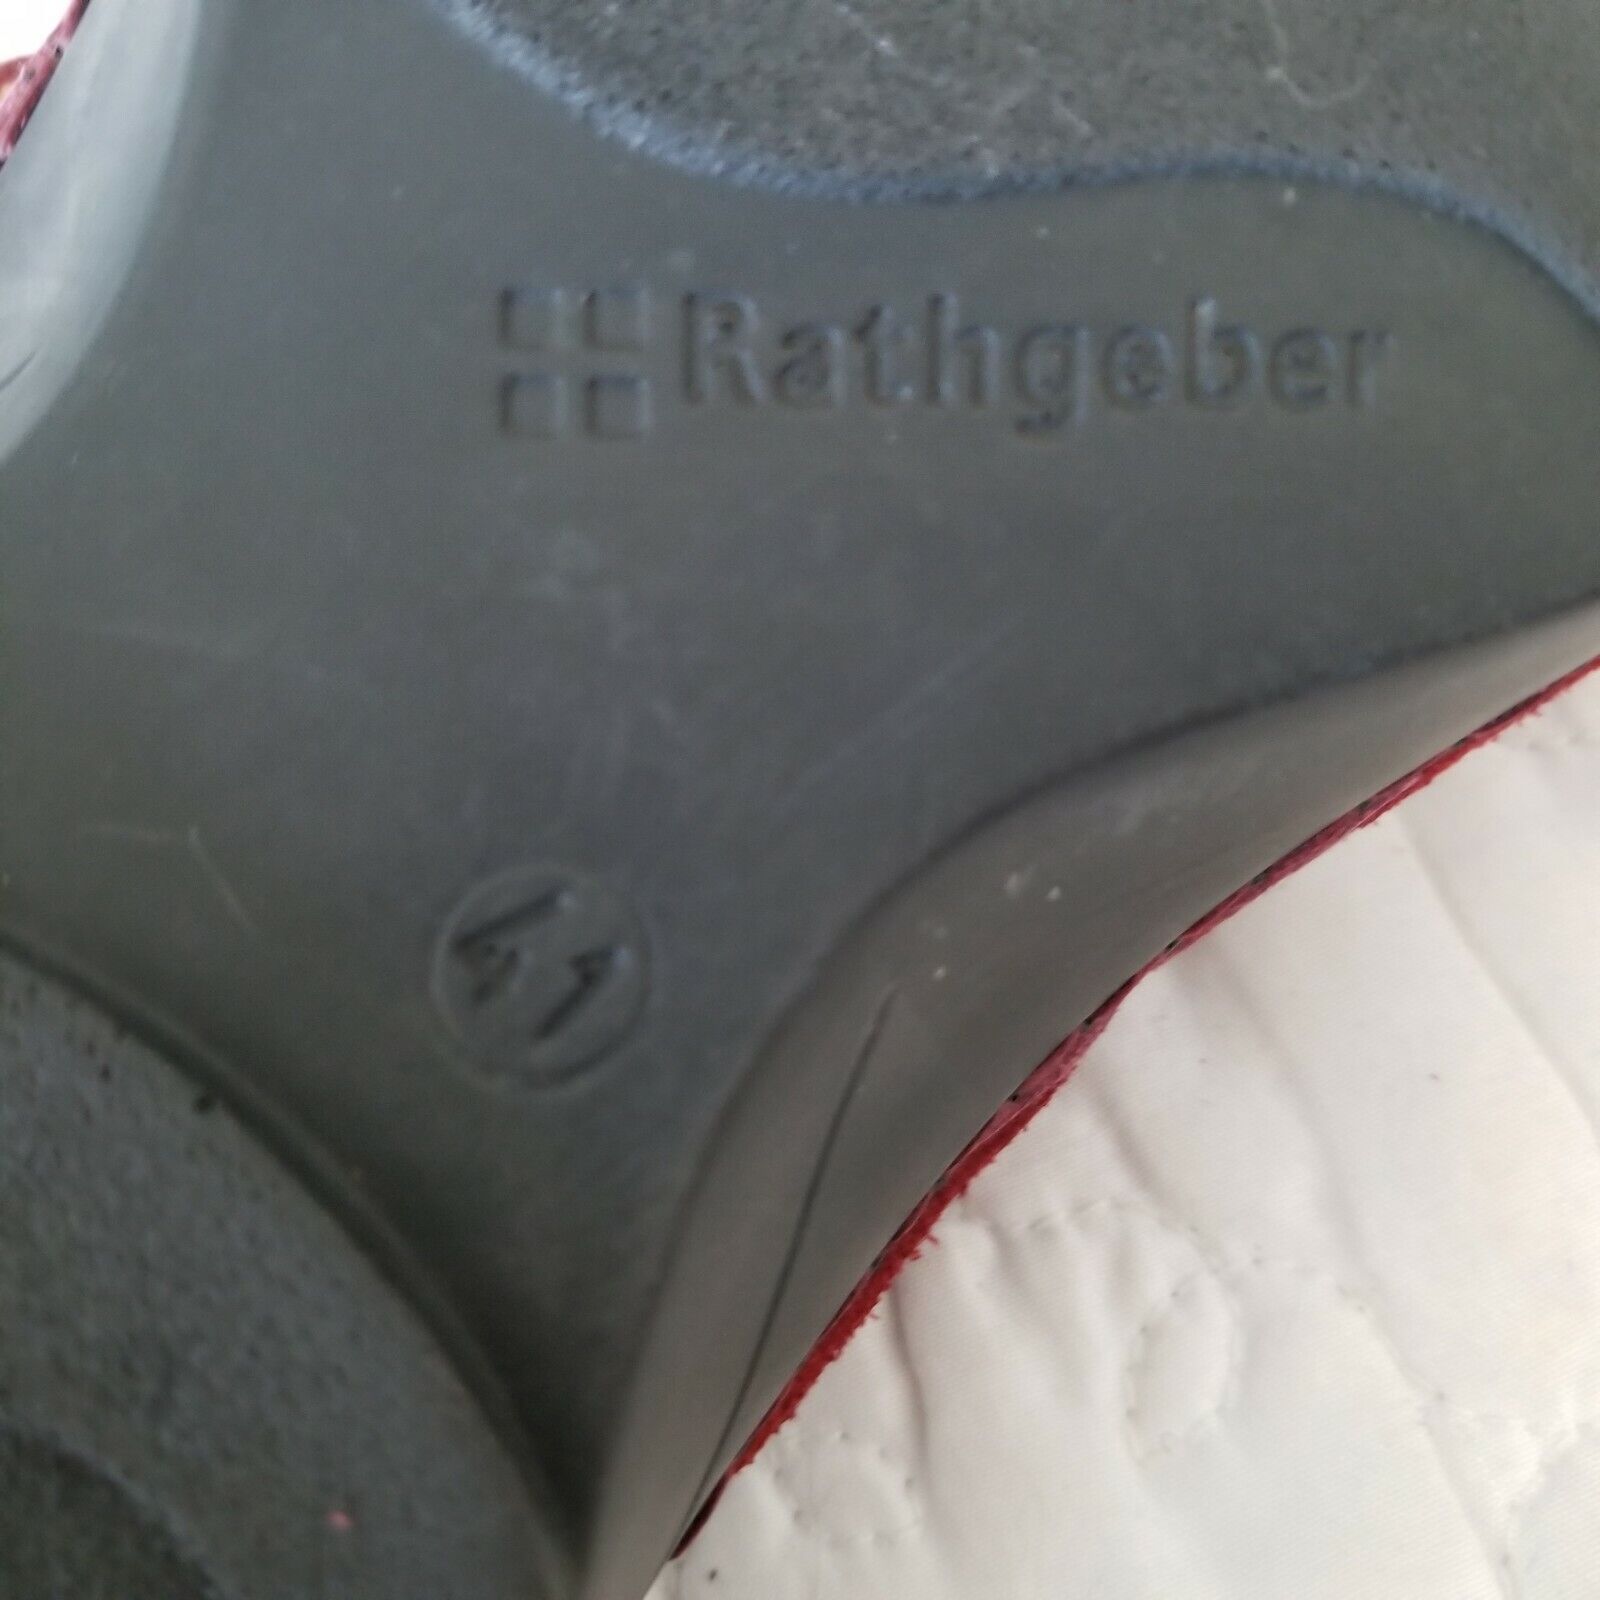 budbringer Se igennem Antipoison Rathgeber Muraade Comfort Sandals US 9.5 EU 41 Red Leather 1.5" Wedge Heel  Slide | eBay